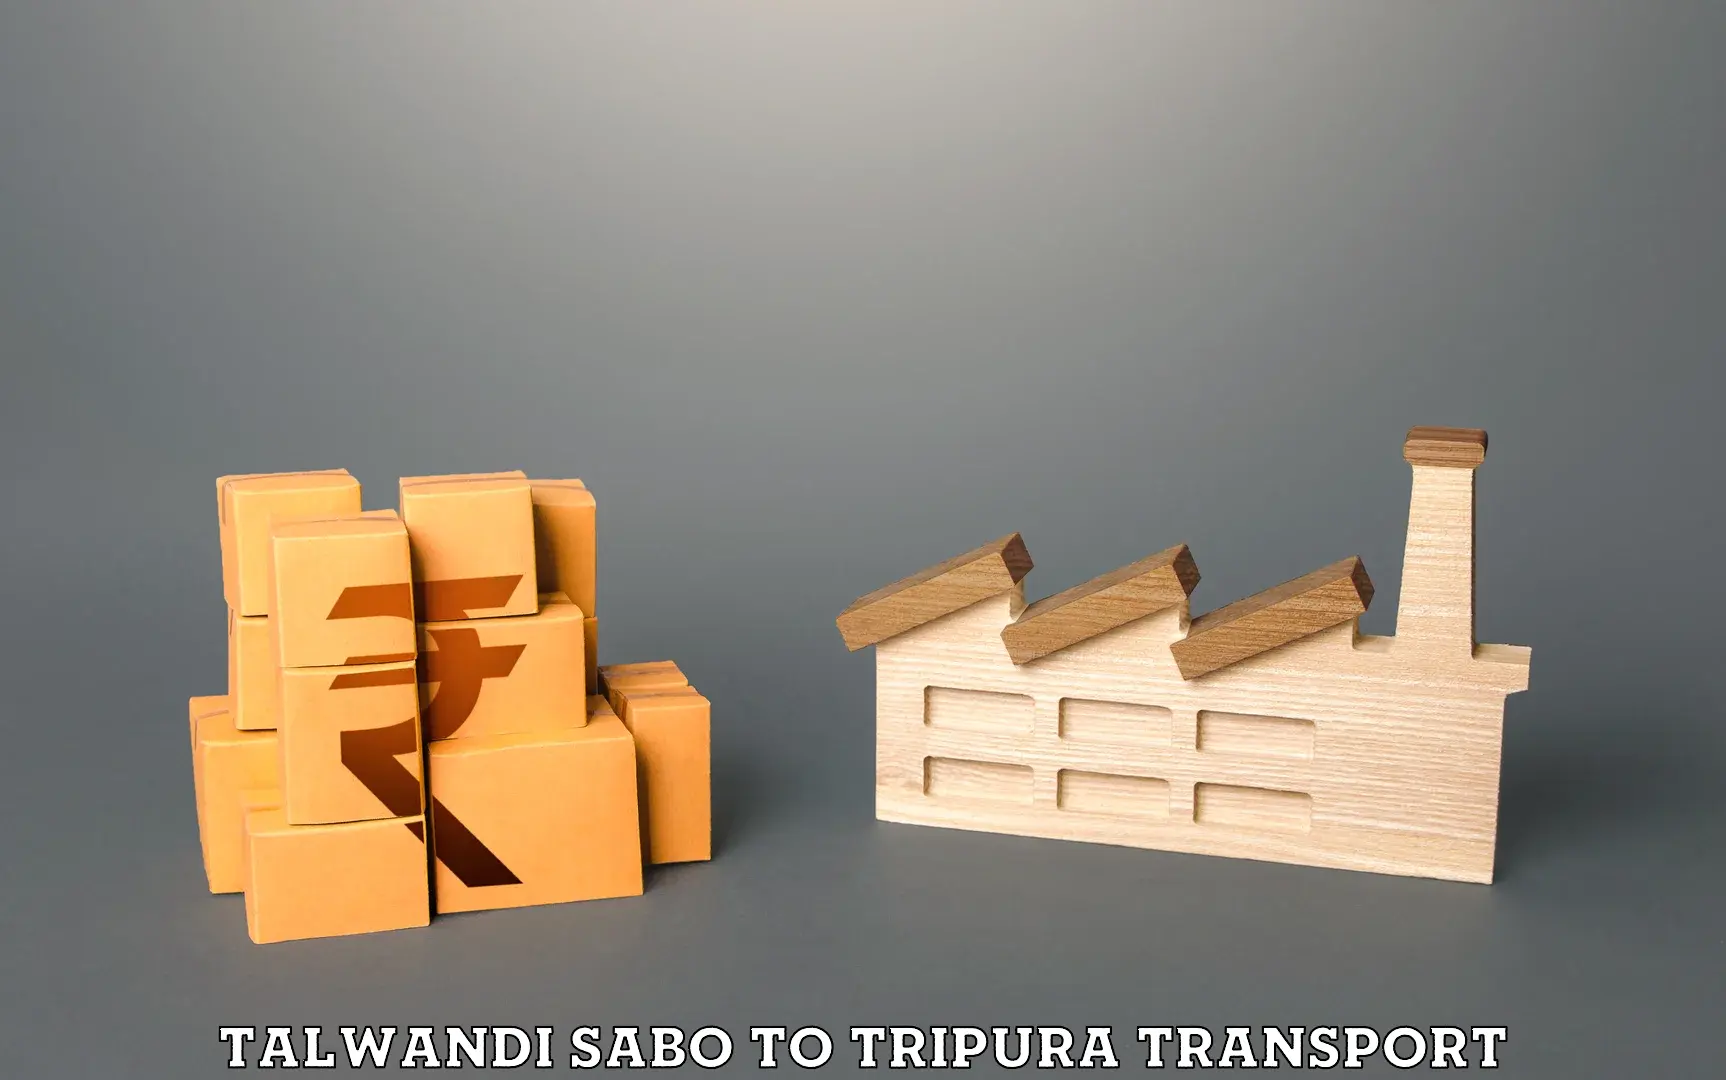 Daily transport service Talwandi Sabo to Manu Bazar